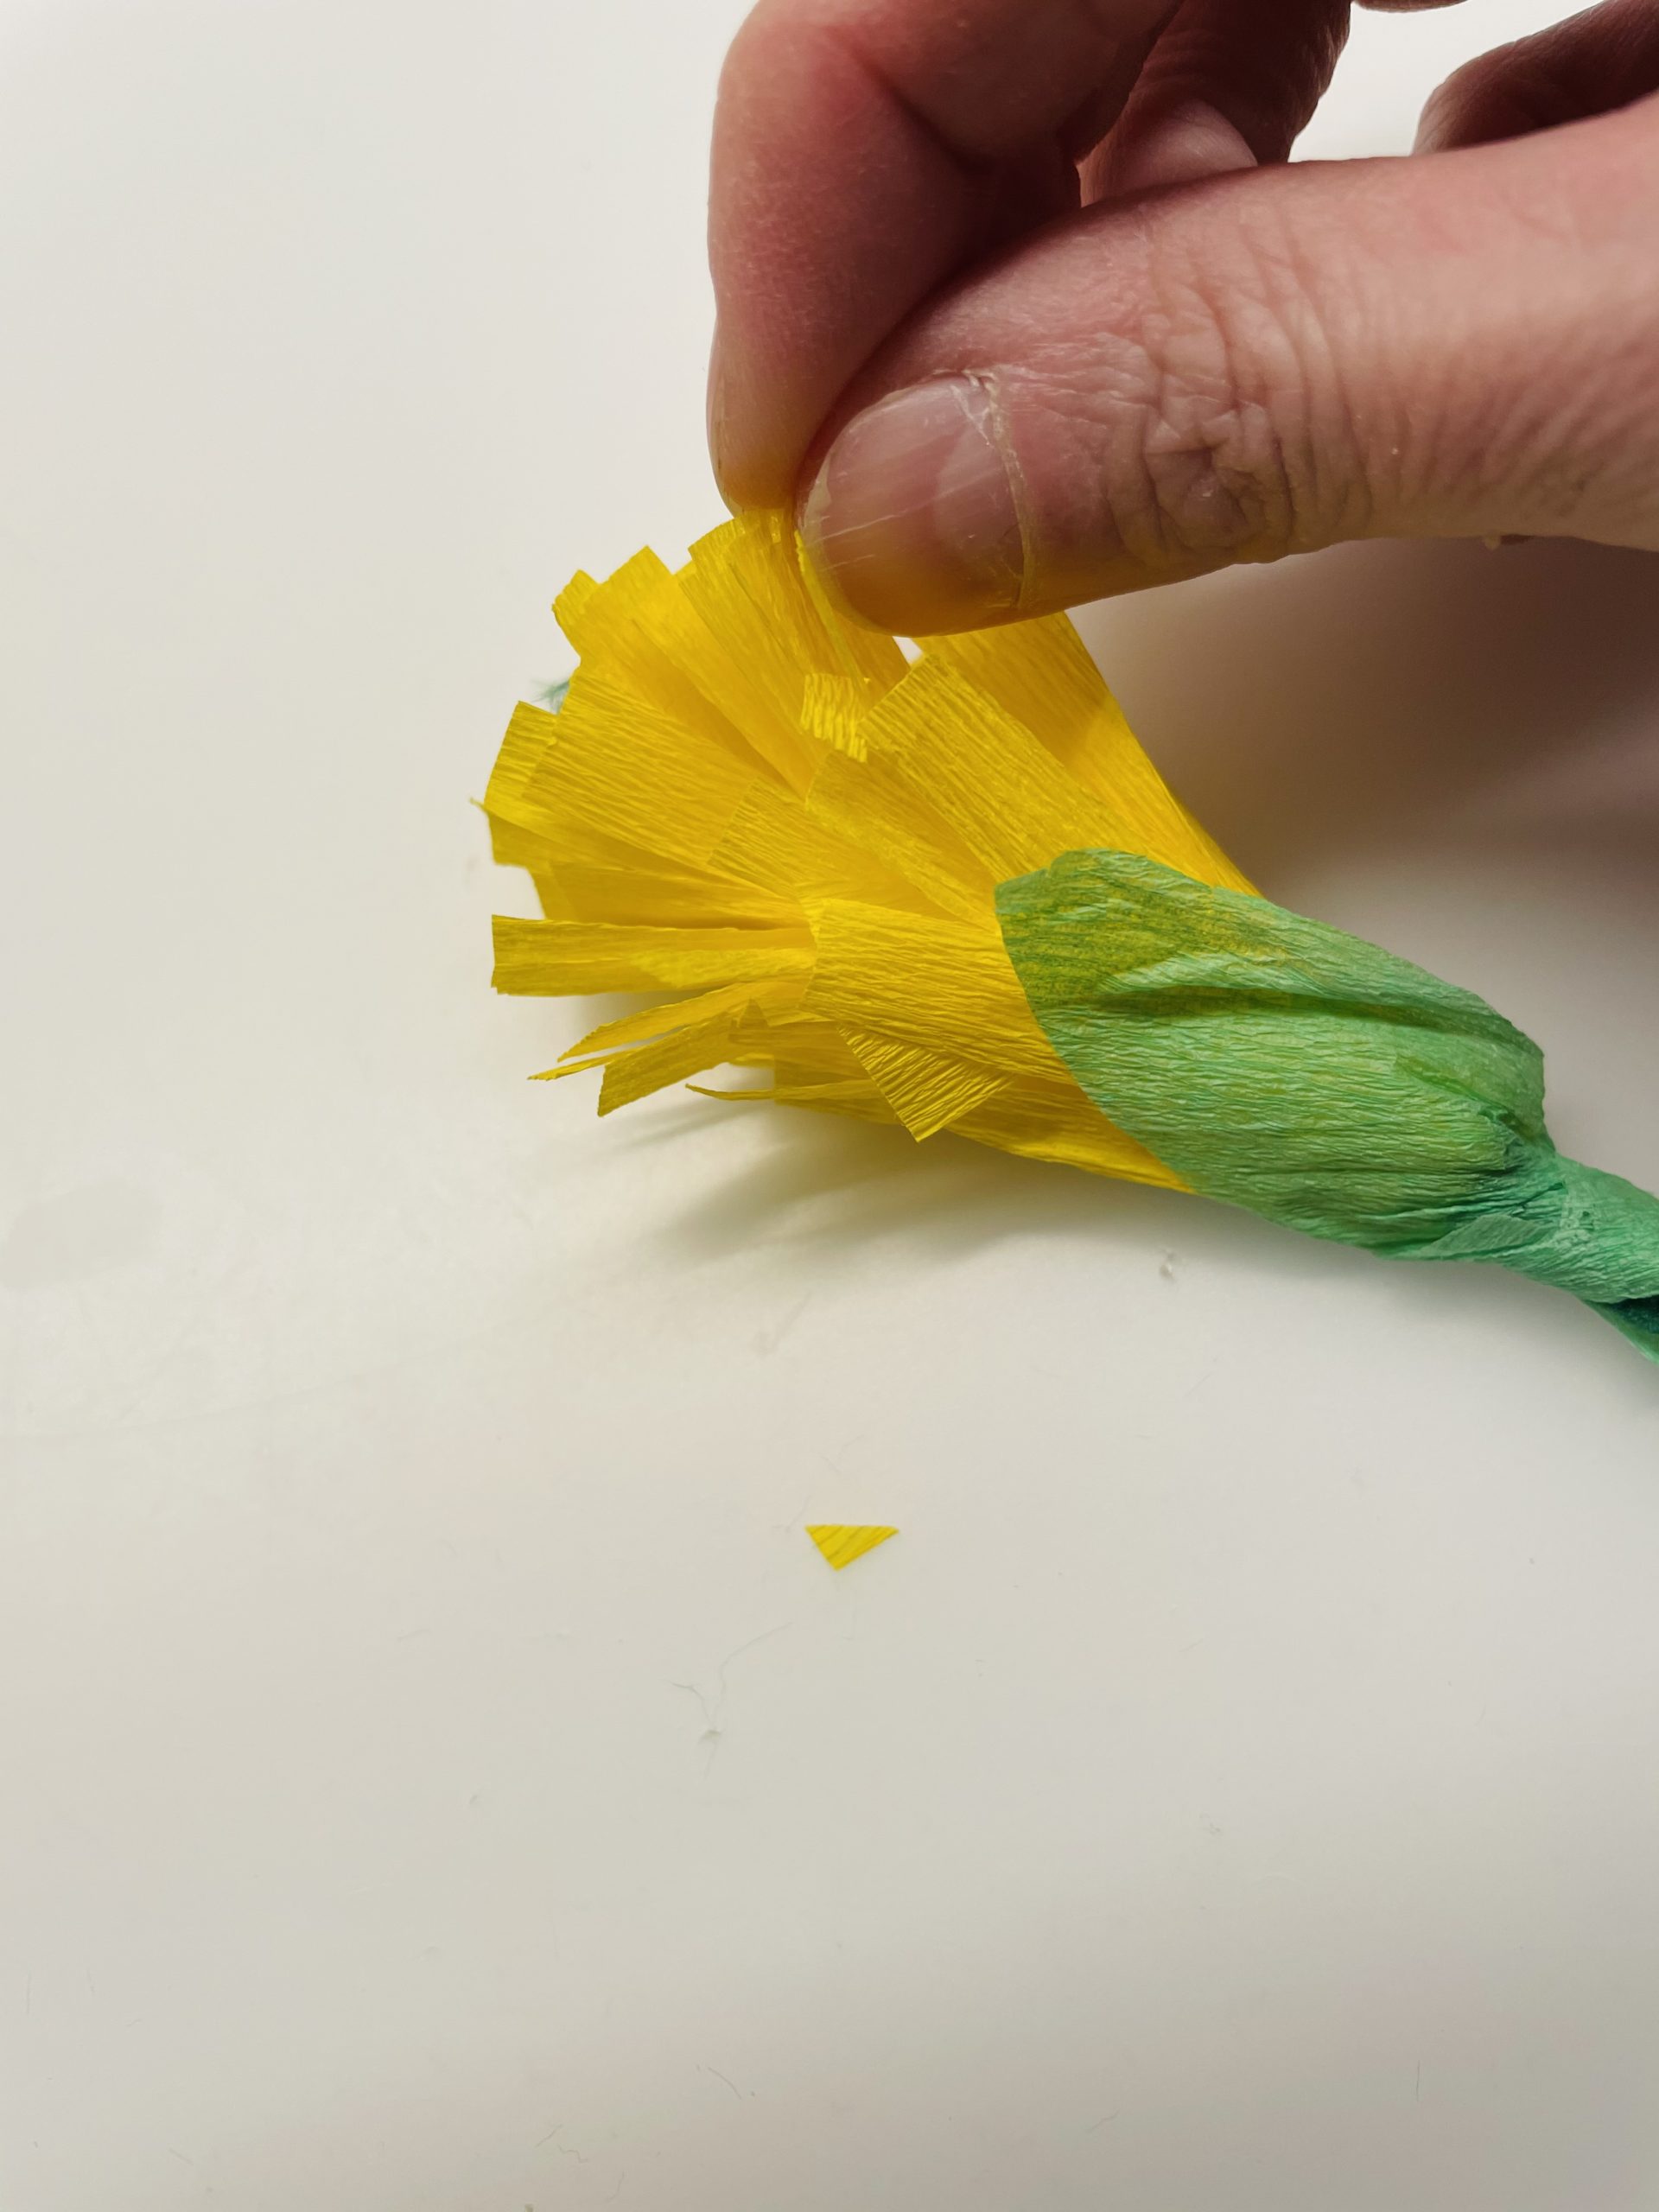 Bild zum Schritt 11 für das Bastel- und DIY-Abenteuer für Kinder: 'Zupft nun mit den Fingern die gelben Zungenblütenblätter vorsichtig etwas...'